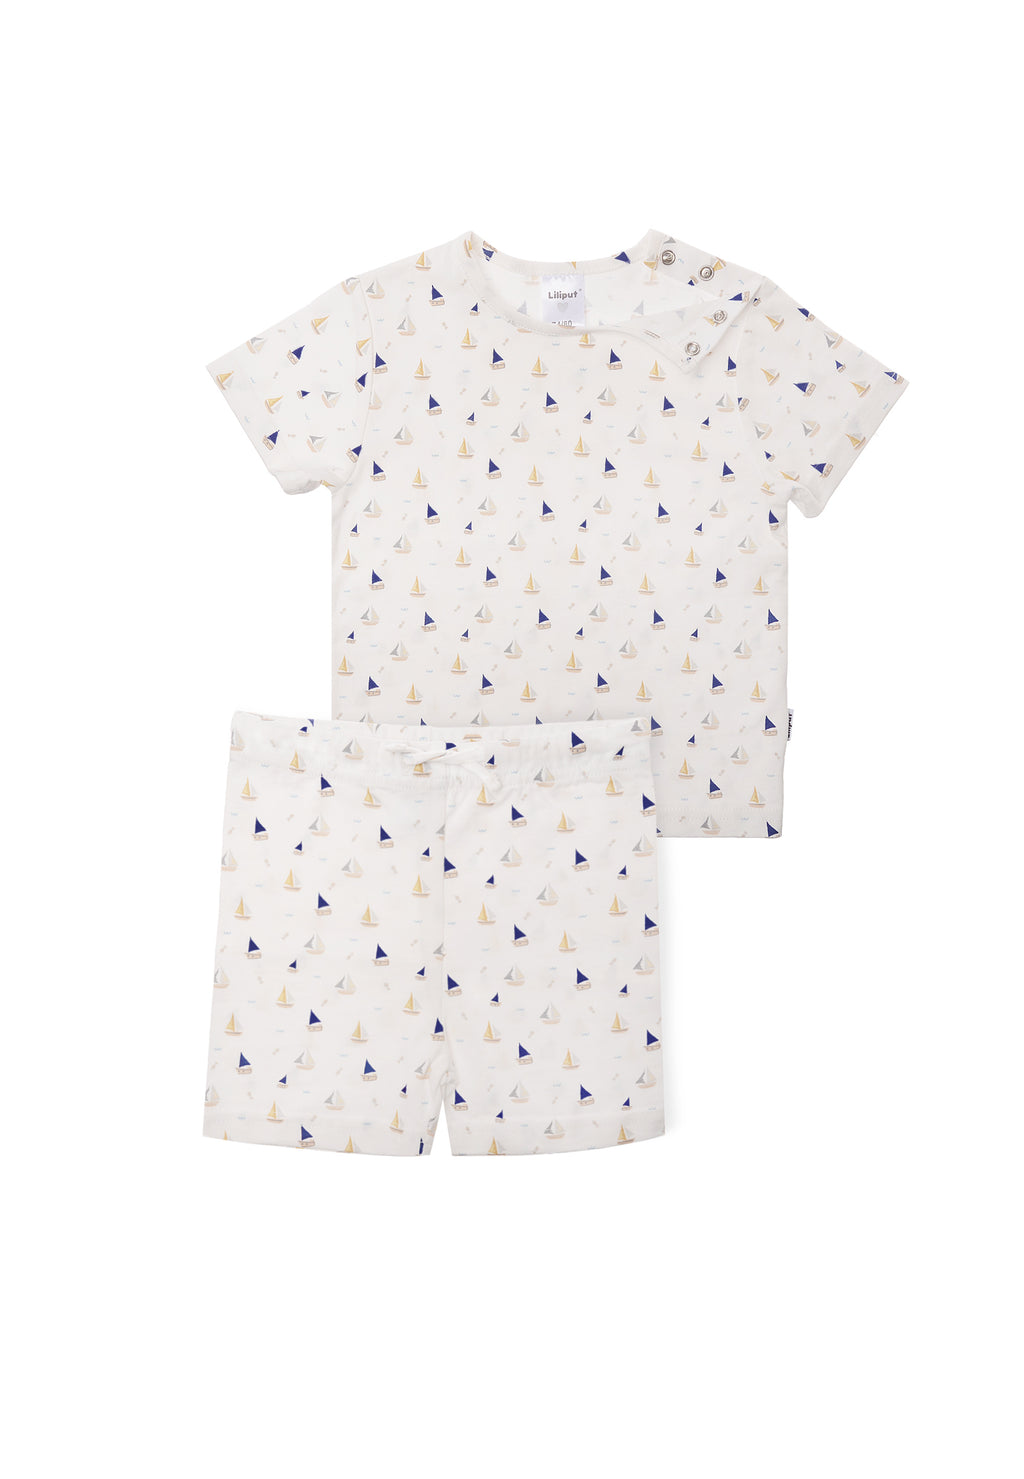 Doppelpack Shirts und Shorts für warme Sommertage mit Baby und Kleinkind.